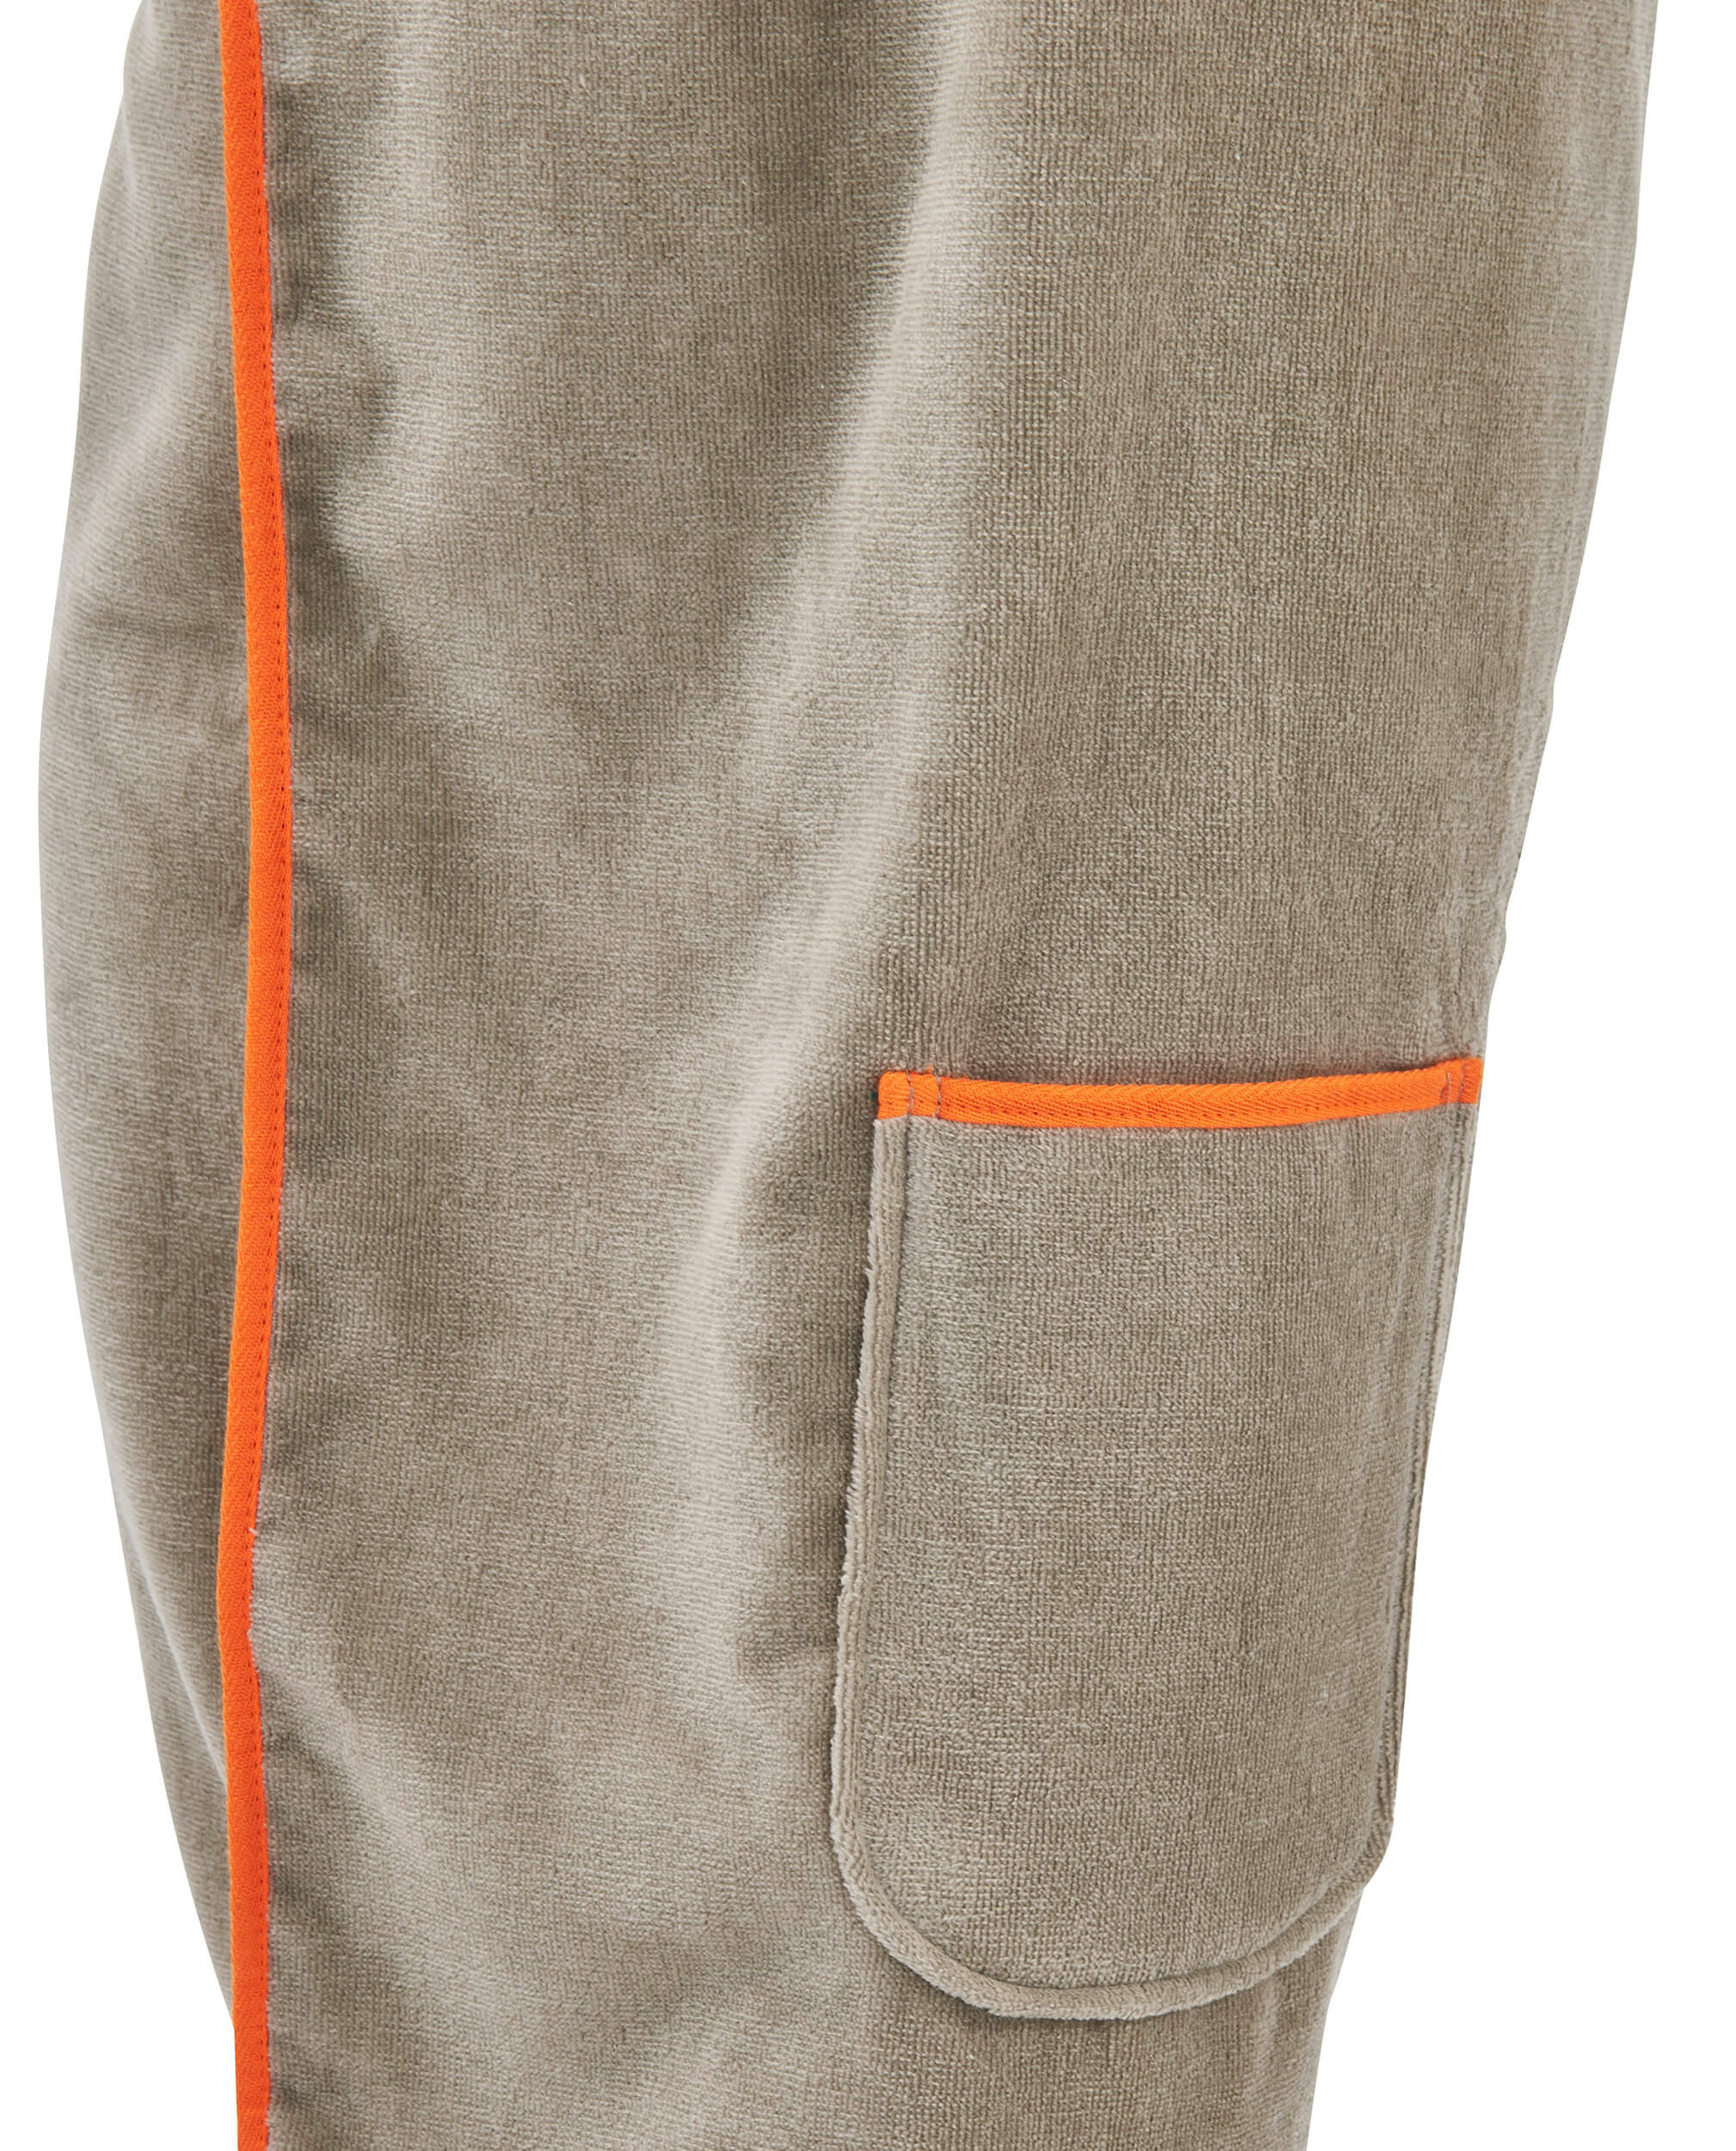 Женская юбка-килт Saunakilt Taupe